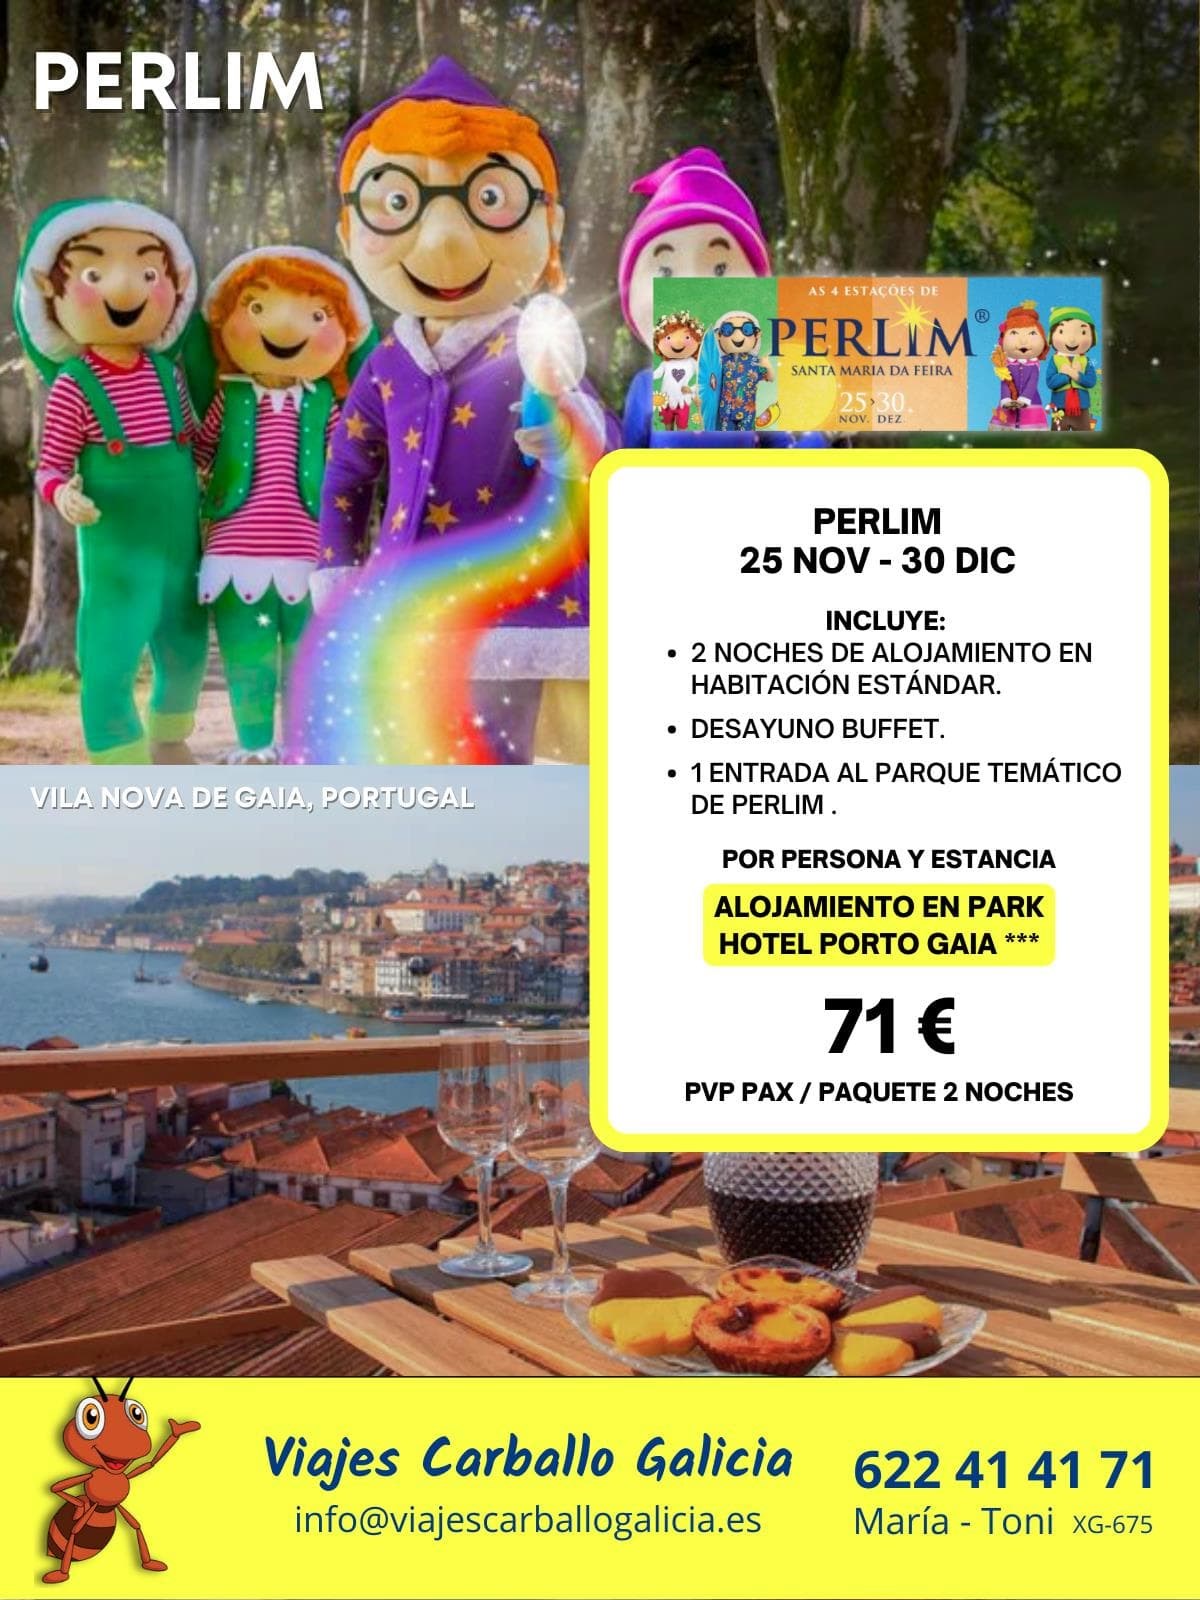 ¡Viajes exclusivos al maravilloso mundo de Perlim! - Imagen 4